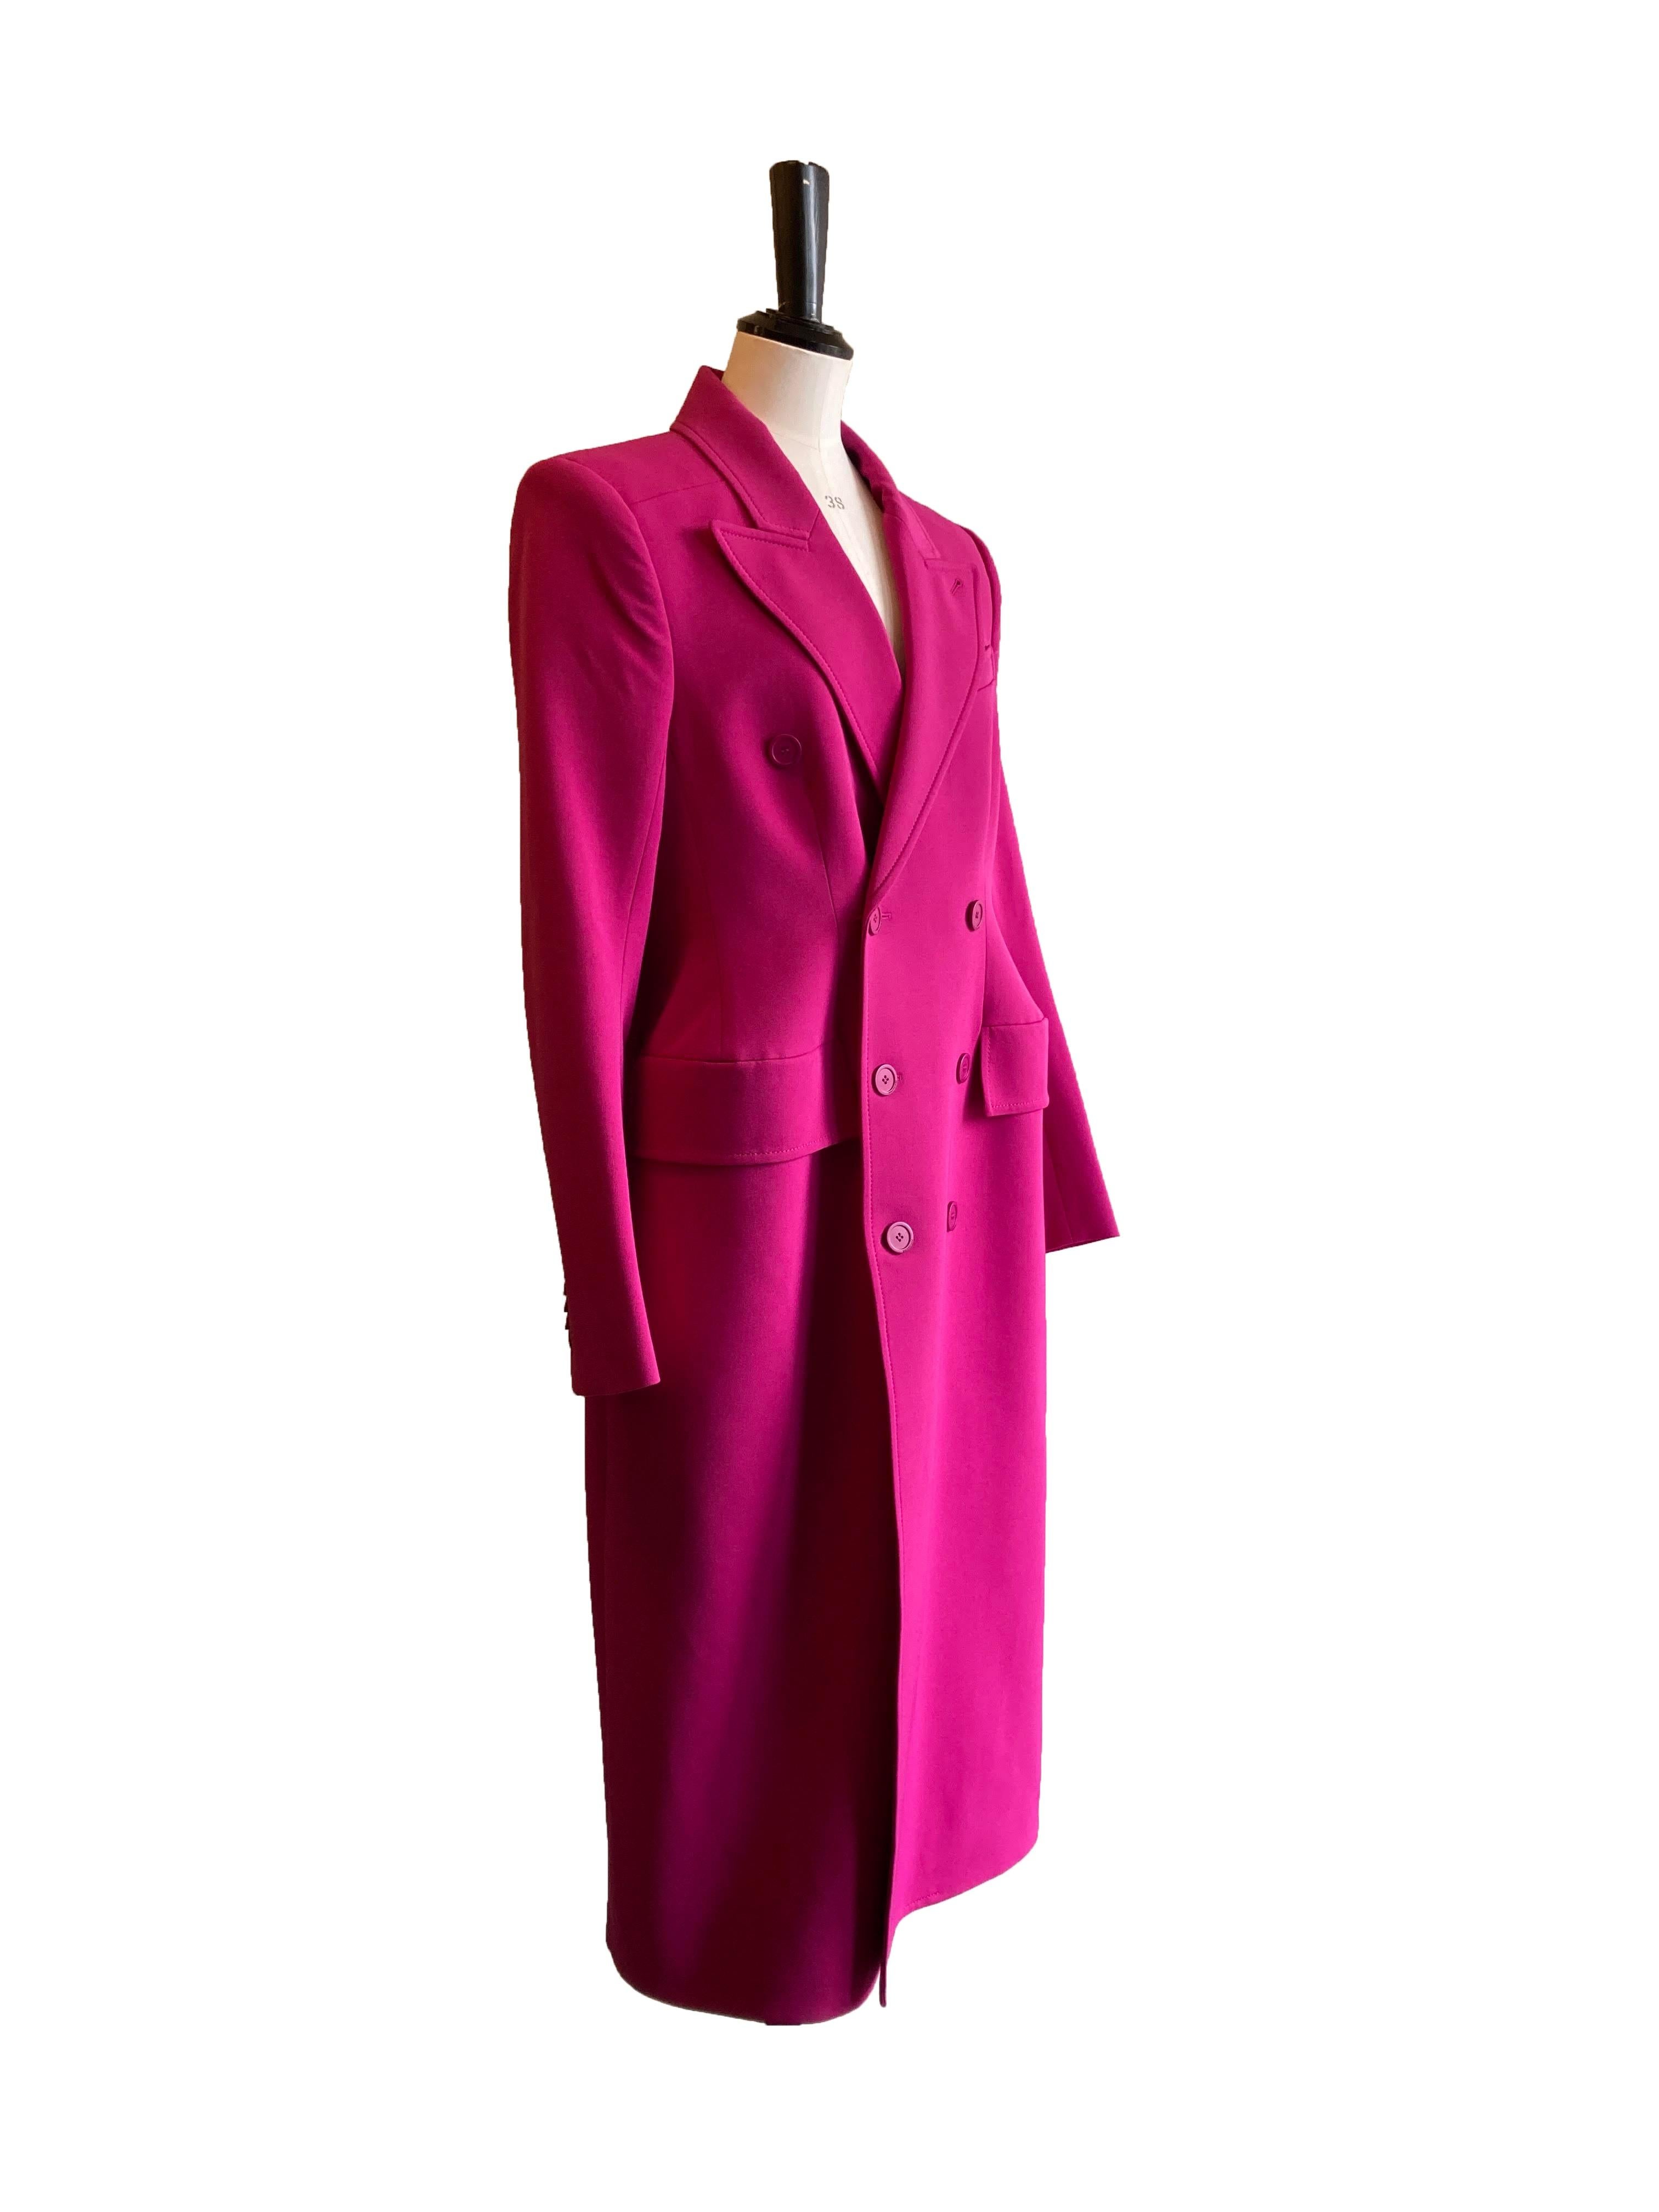 Rosafarbener Hourglass-Mantel von Balenciaga. Aus der Resort Collection'S im Jahr 2023.

Oberteil aus einer Polyester-Wollmischung in Pink mit der für Balenciaga typischen Silhouette mit betonten Hüften, eingeschnürter Taille und starken Schultern,